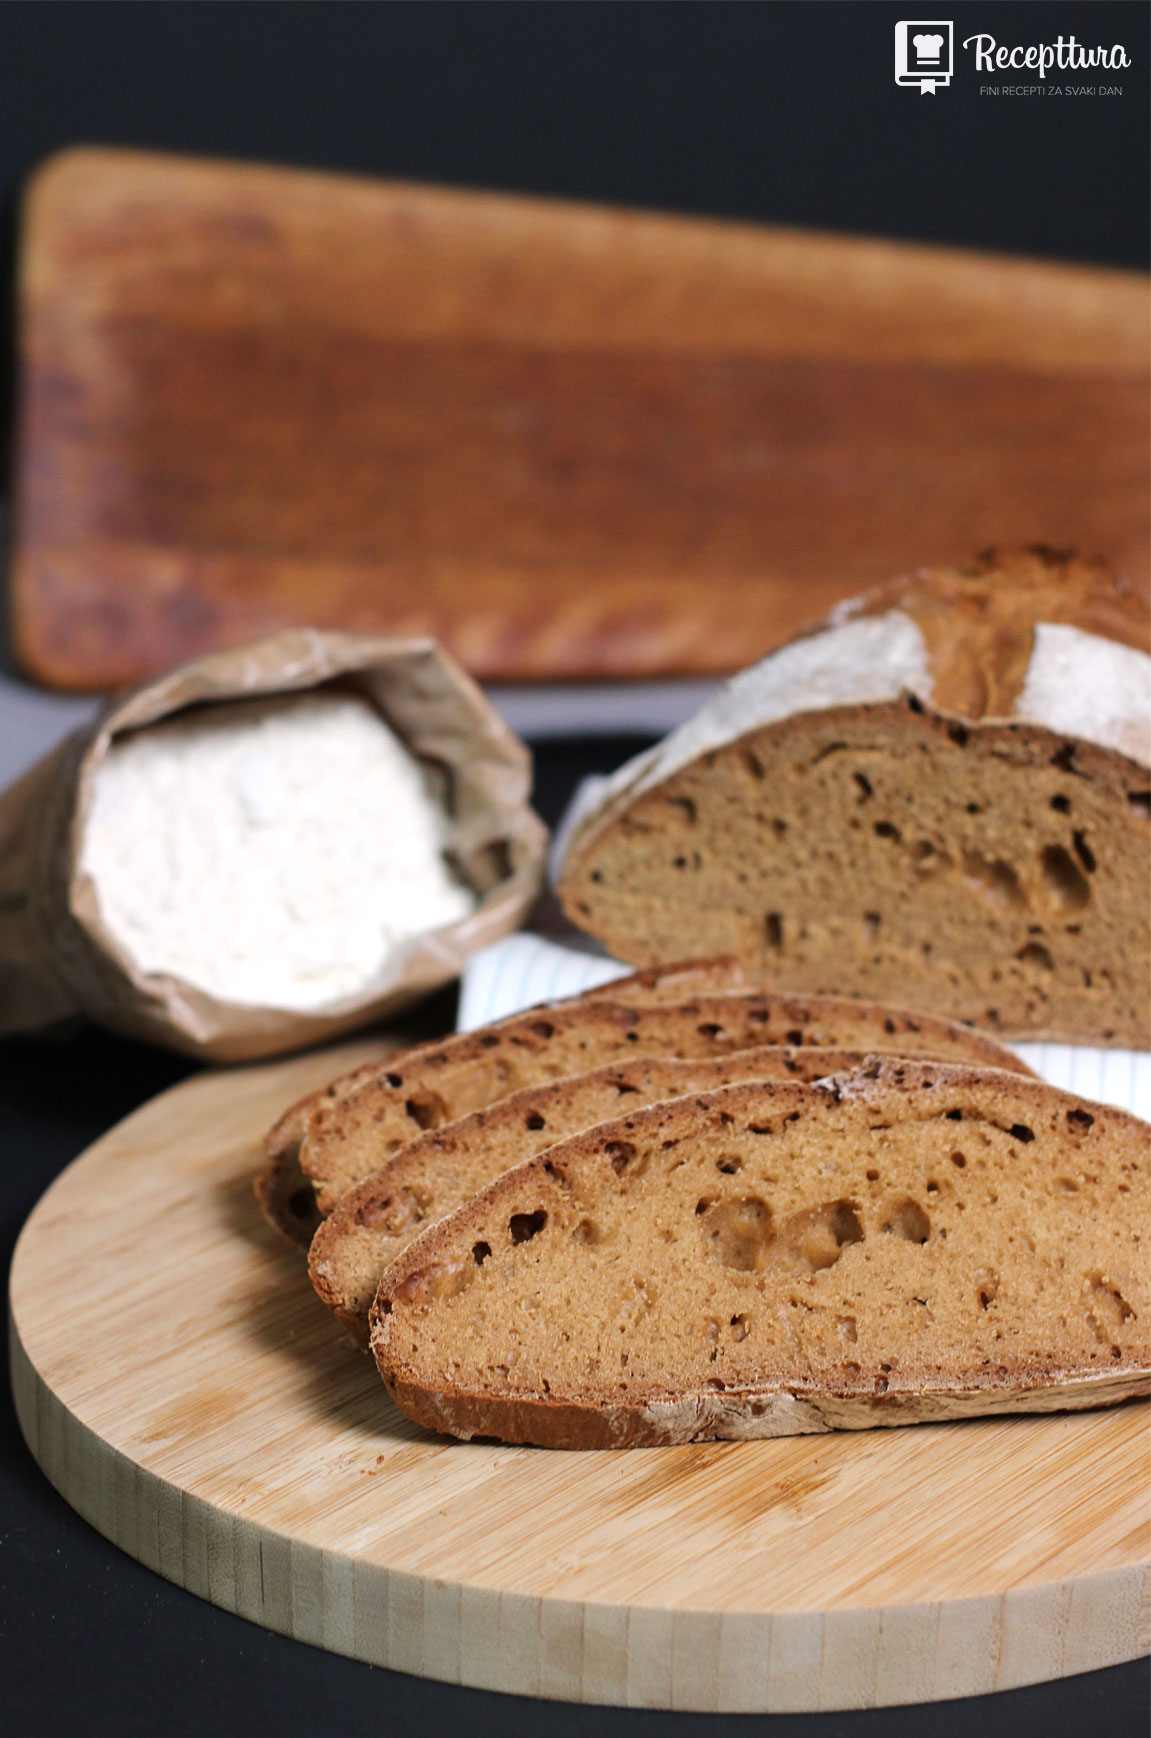 Kruh od pirovog brašna jako je ukusan, te se brzo pravi.